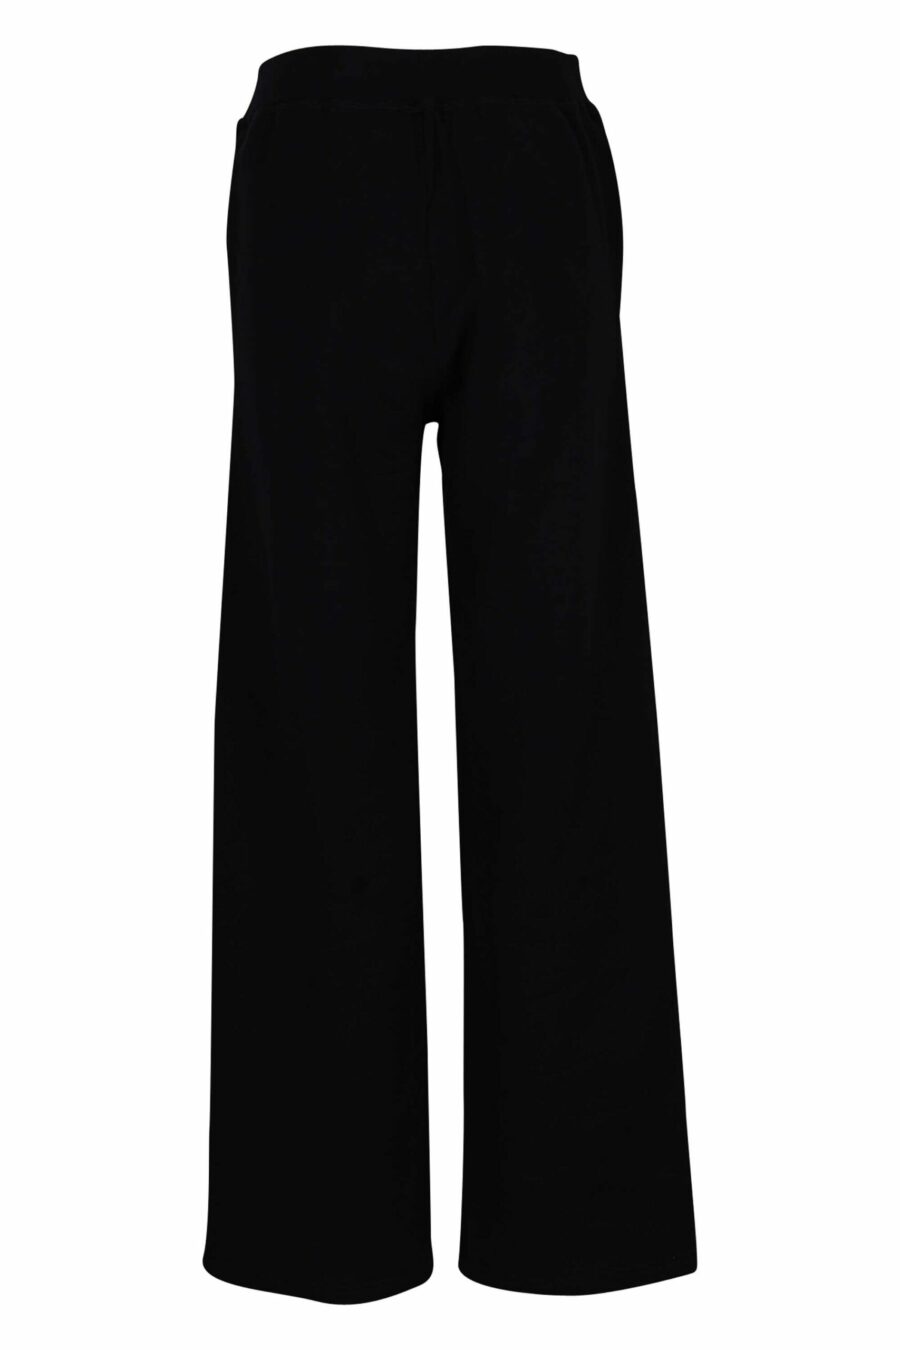 Pantalon noir avec logo en forme de cœur transparent - 8054148304249 2 échelles